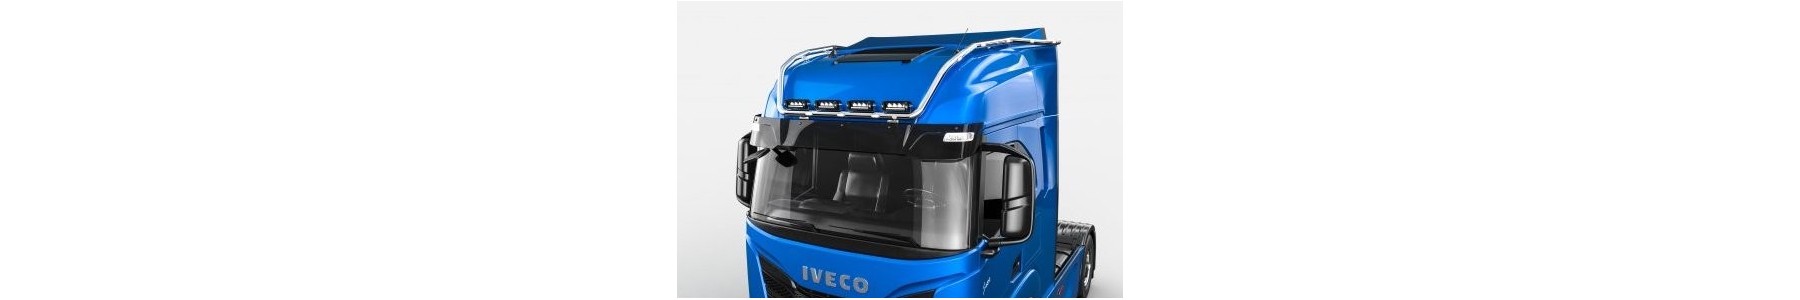 22H22 - Vente d'accessoires tuning pour poids-lourds : Rampe de toit pour votre camion IVECO S-WAY